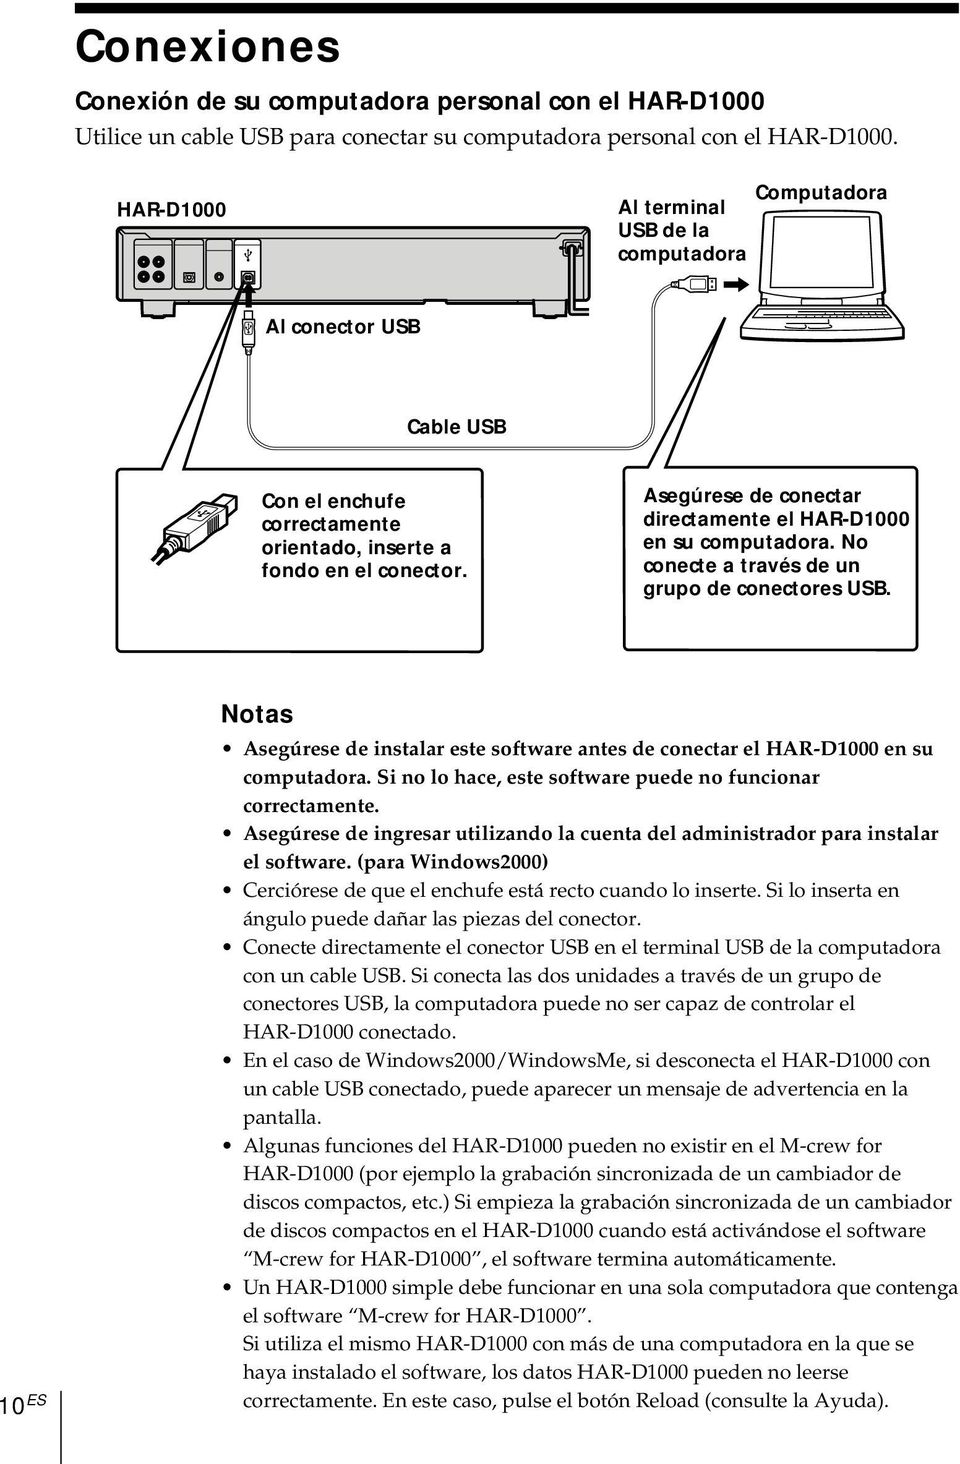 Asegúrese de conectar directamente el HAR-D1000 en su computadora. No conecte a través de un grupo de conectores USB.